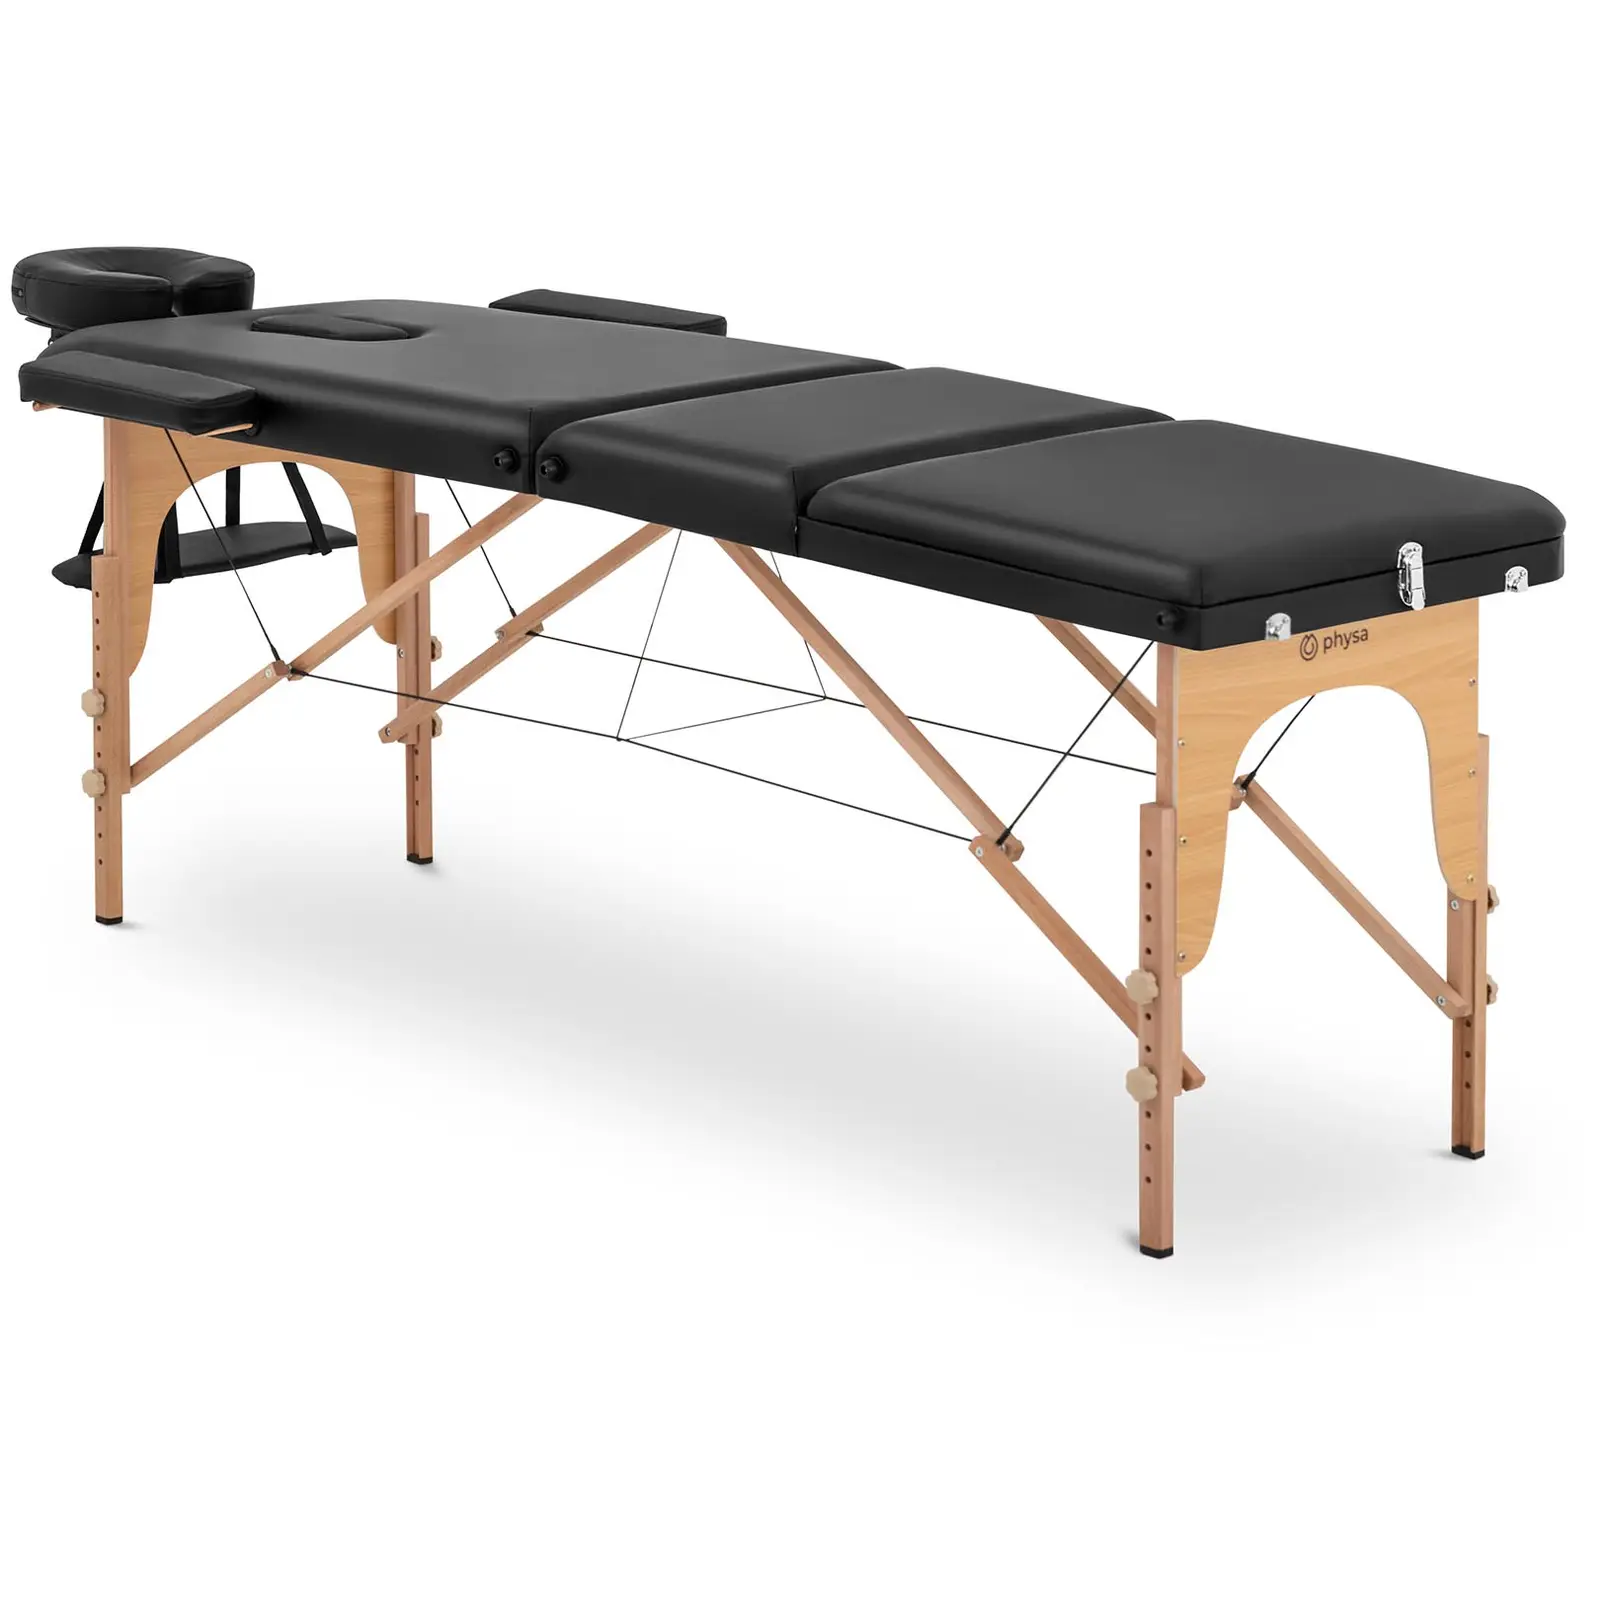 Lettino massaggio portatile - 185 x 60 x 62 cm - 227 kg - Black